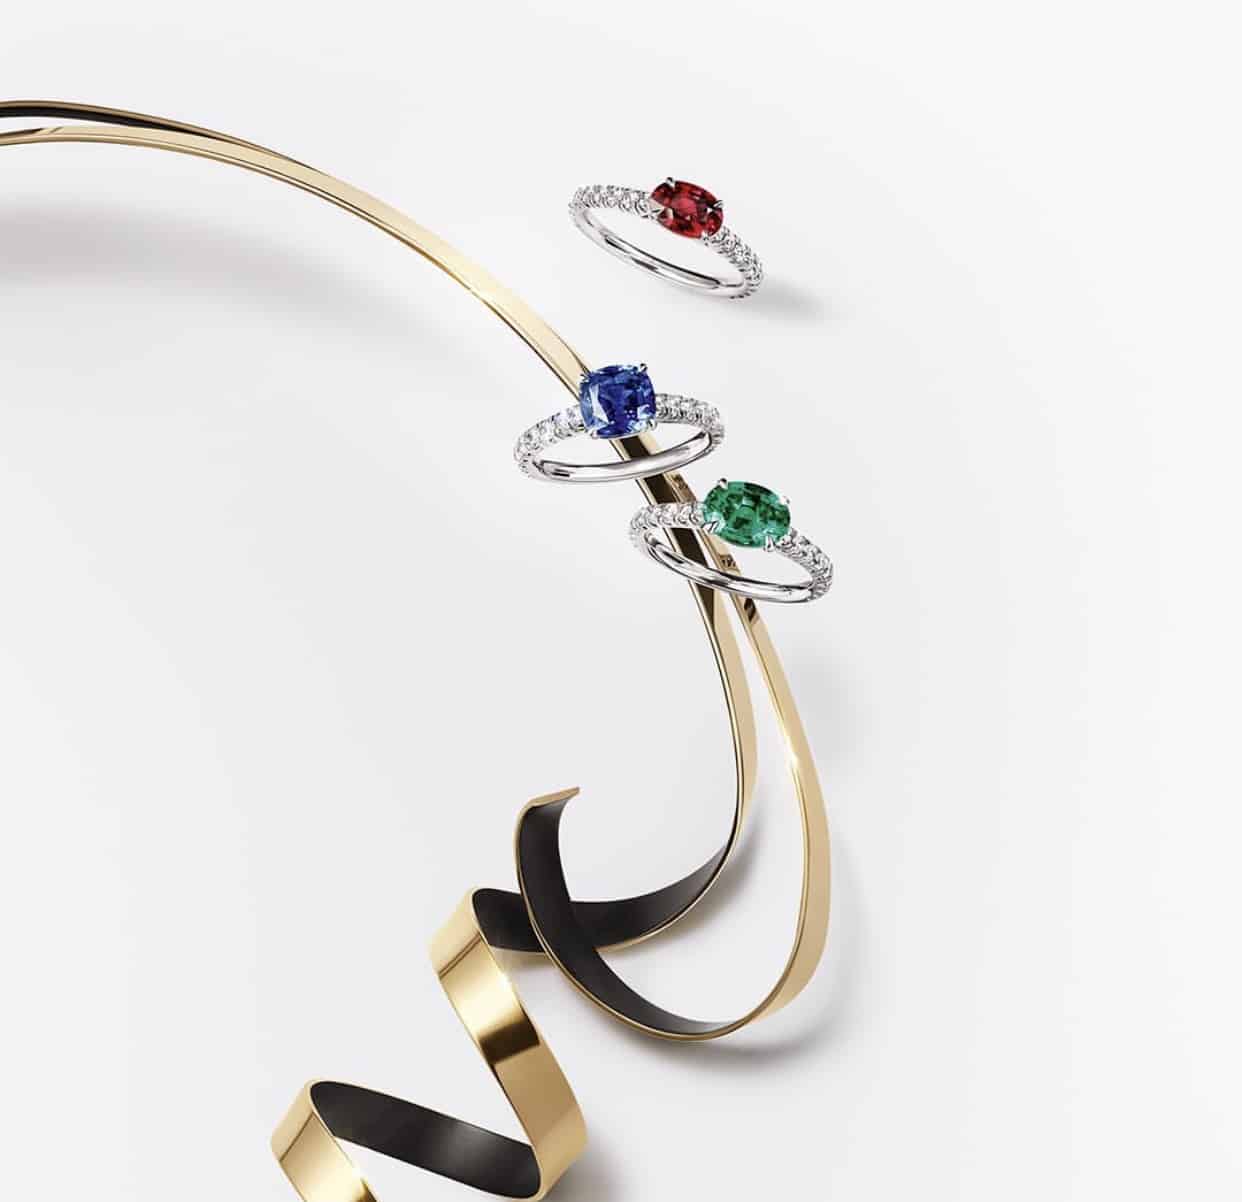 Nová kolekce prstenů od Cartier je vaší volbou, když se ztrácíte mezi možnostmi, je klasická, elegantní, cenově dostupná a přitom vypadá luxusně.